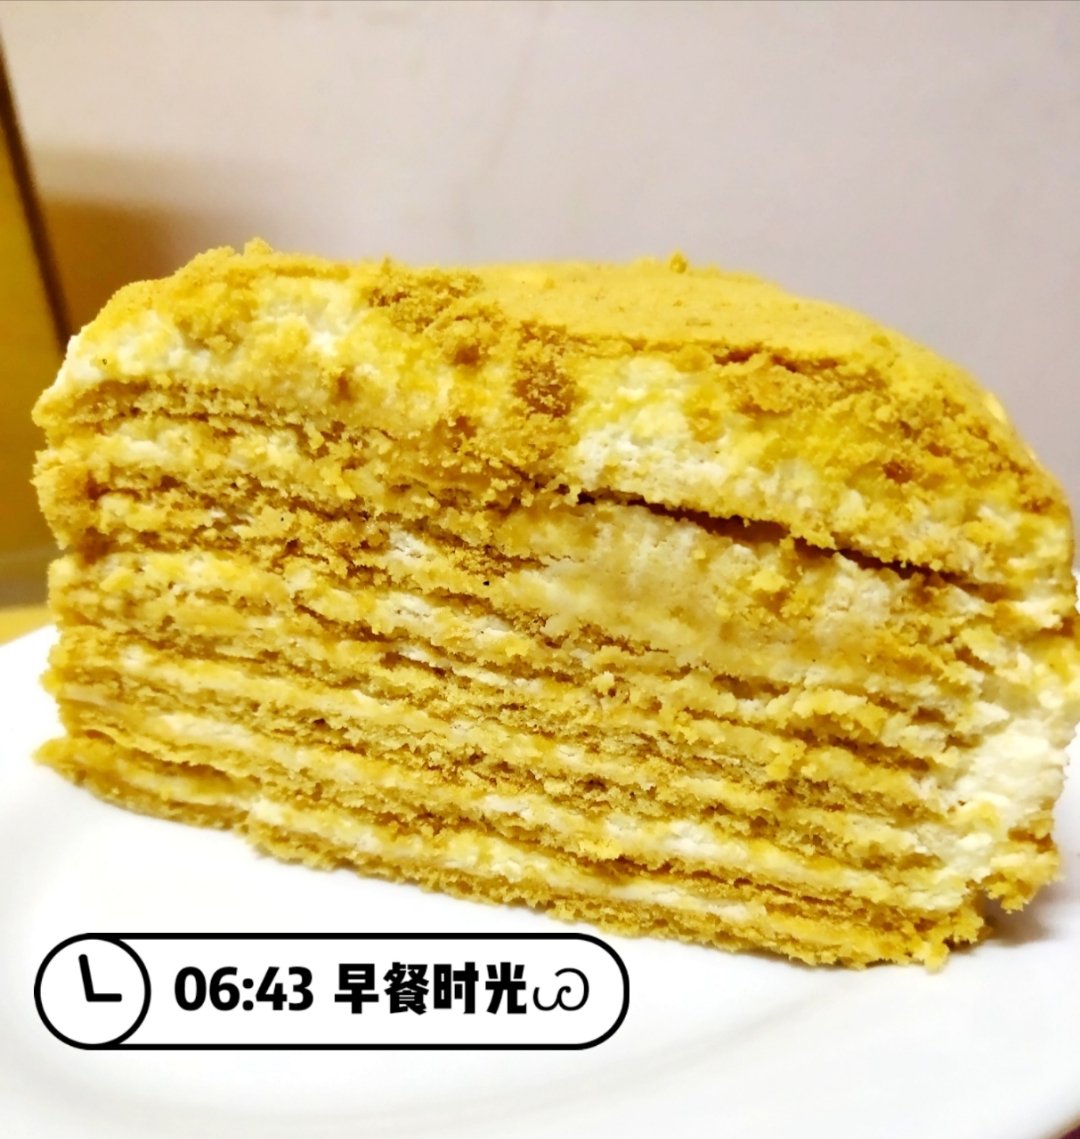 俄罗斯蜂蜜蛋糕   千层蛋糕【又名提拉米苏】